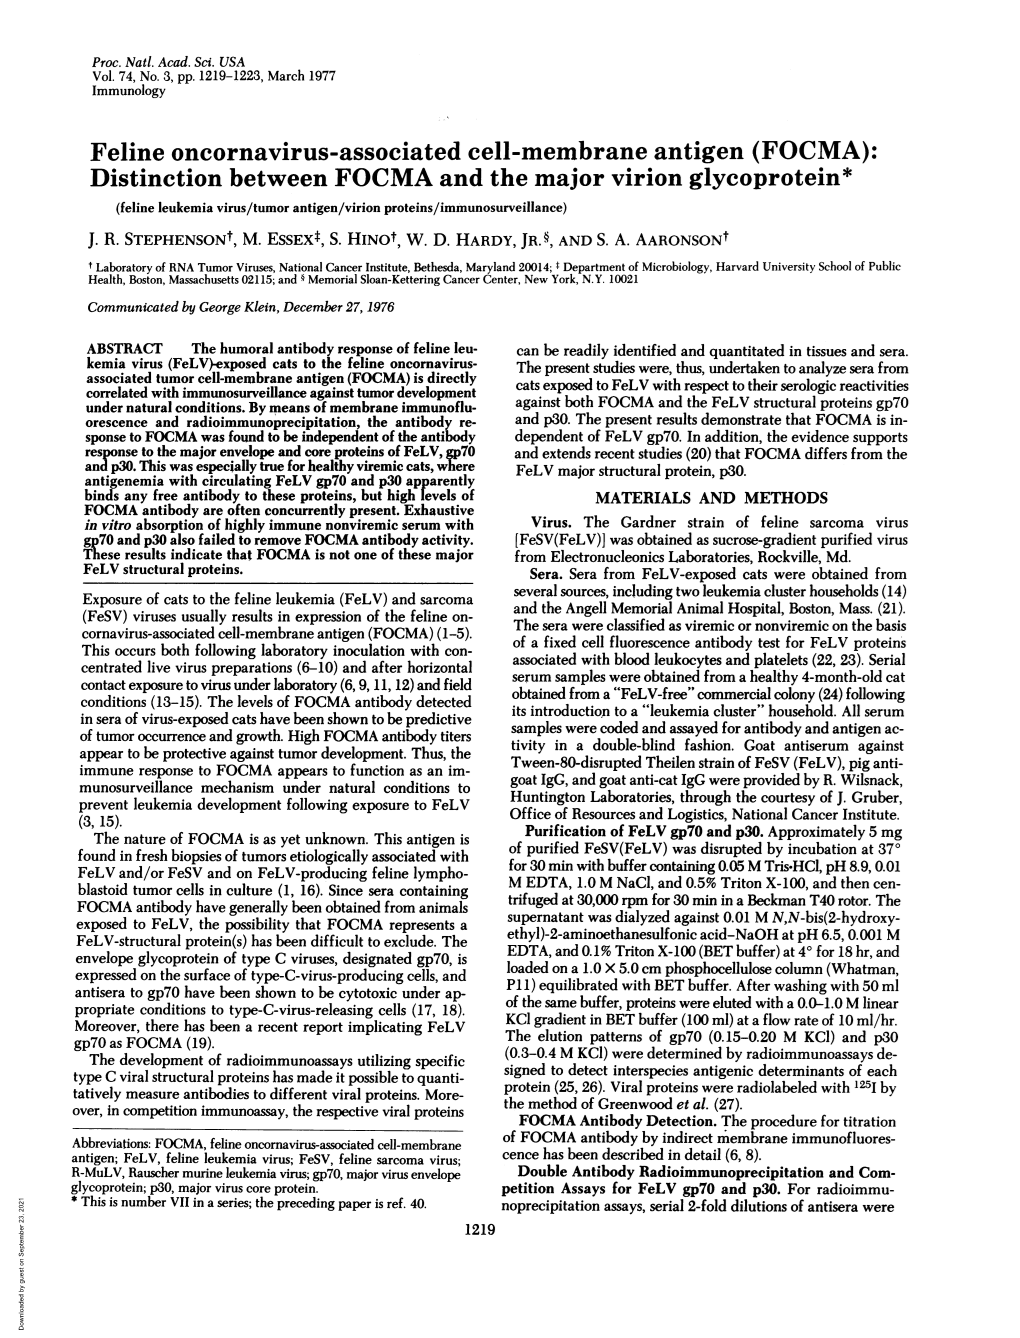 Feline Oncornavirus-Associated Cell-Membrane Antigen (FOCMA